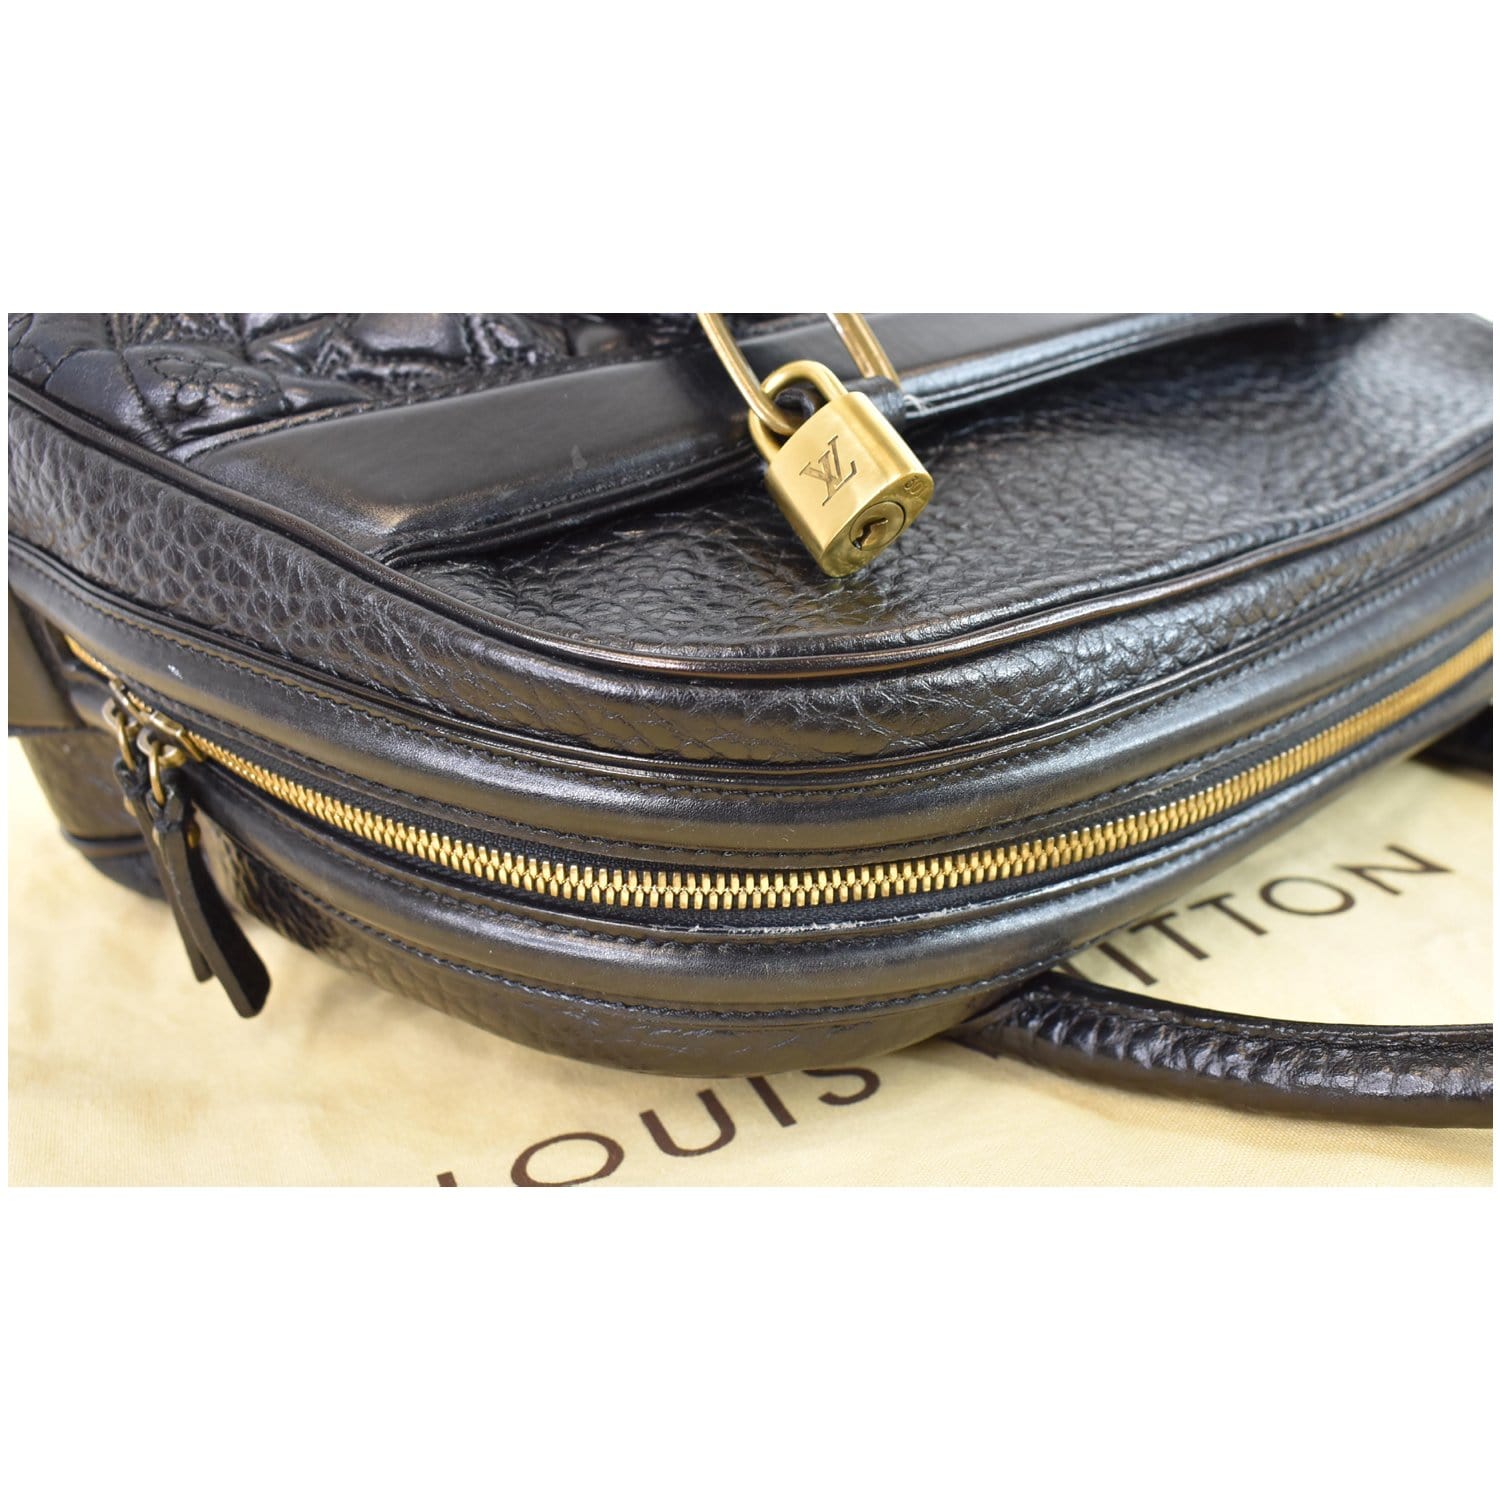 Louis Vuitton Mizi Vienna Bag - 30 - Vuitton - Bag - Hand - Multi -  Monogram - Color - Speedy - M92643 – dct - ep_vintage luxury Store - Louis